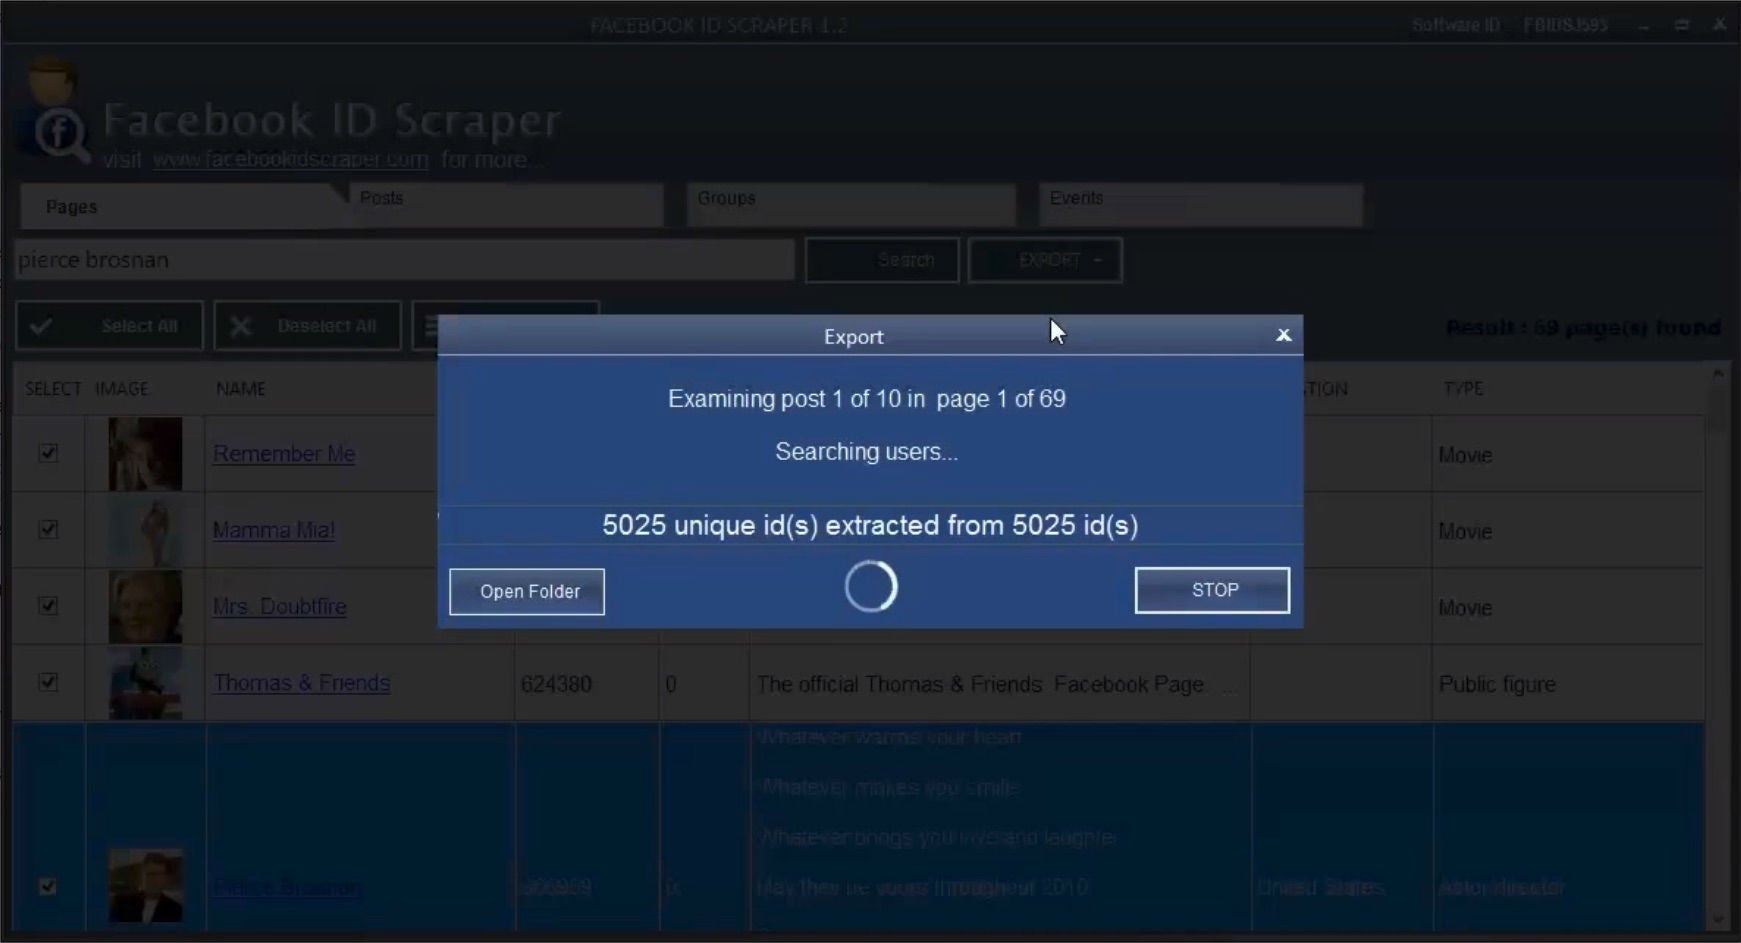 Demo des Tools "Facebook ID Scraper" – hier werden gerade User IDs von Fans von Seiten über Pierce Brosnan extrahiert (Screenshot aus einem Youtube-Video)